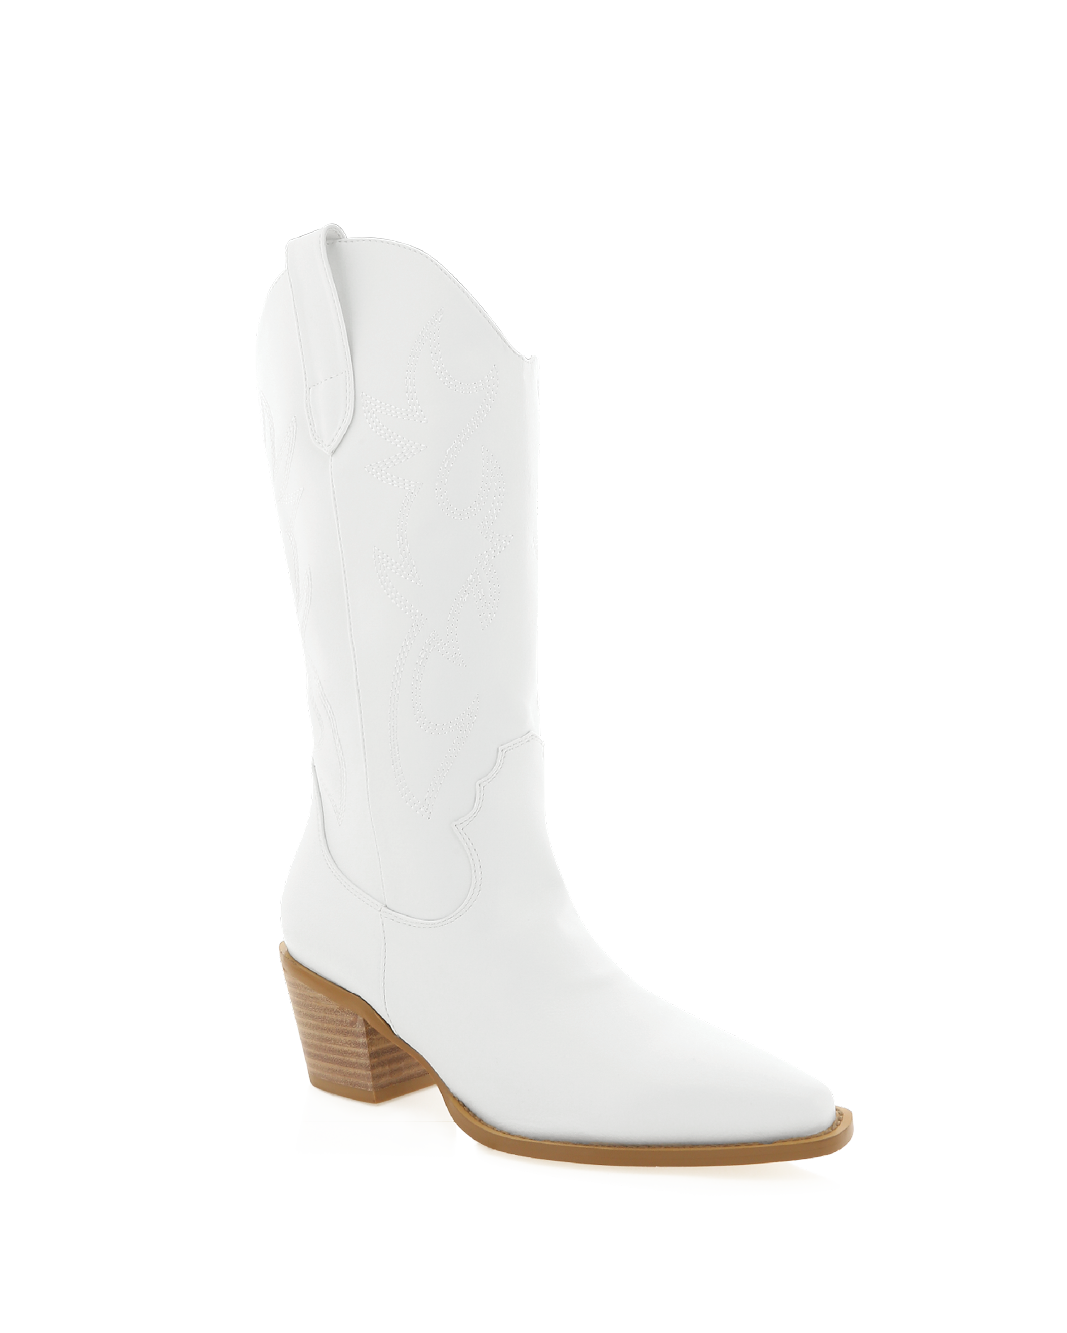 DANARO - WHITE-Boots-Billini-Billini